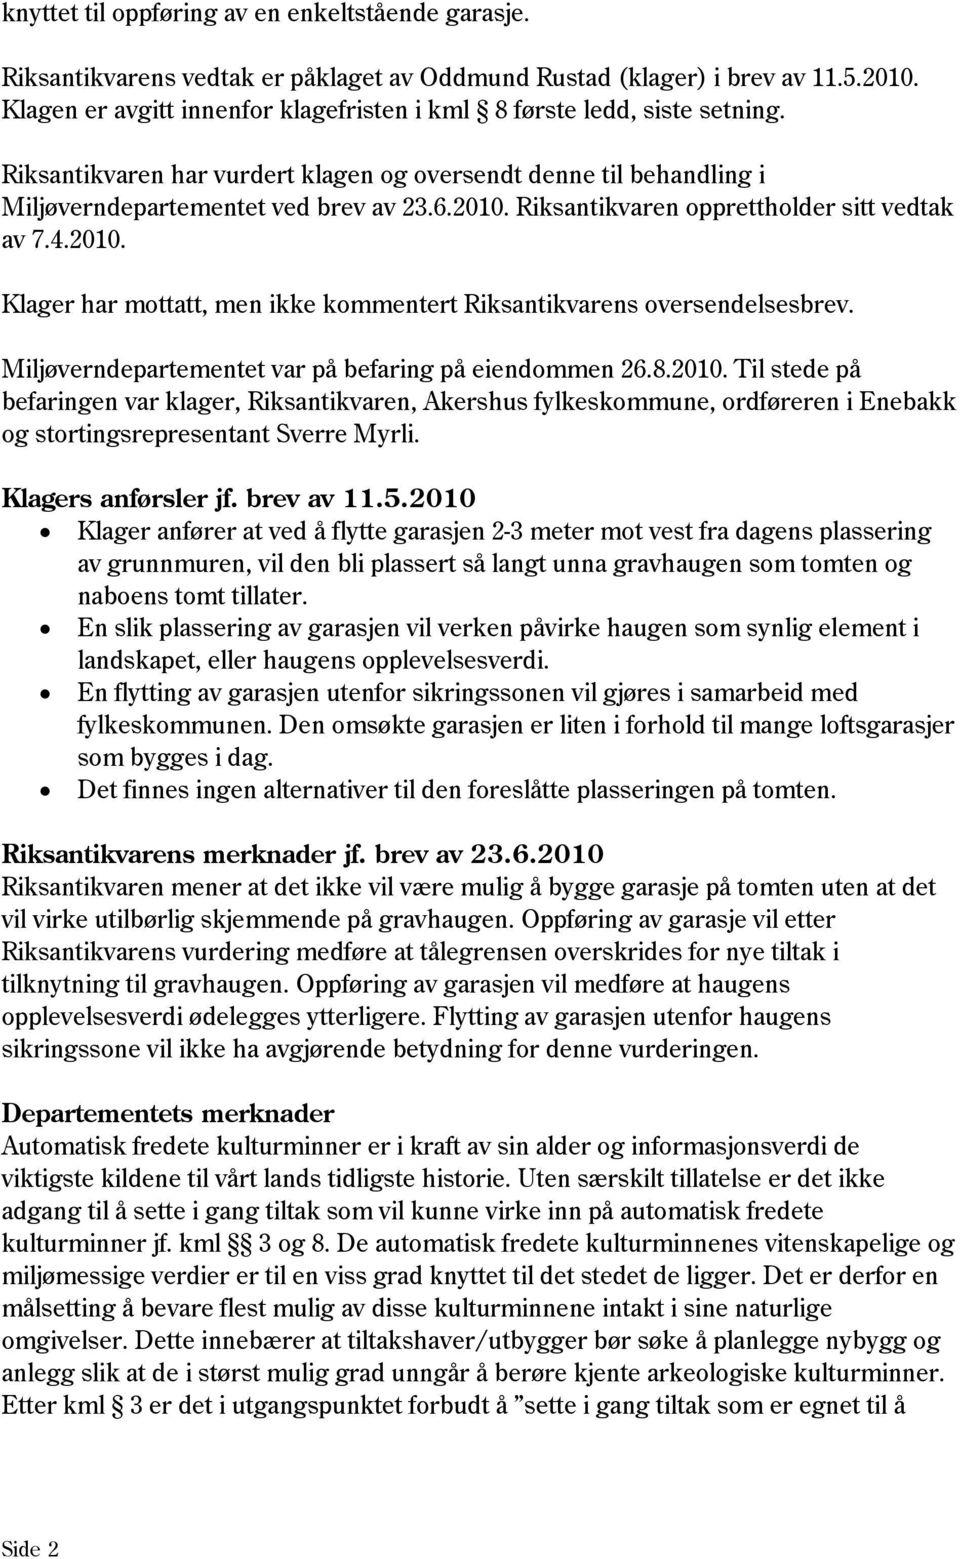 Riksantikvaren opprettholder sitt vedtak av 7.4.2010. Klager har mottatt, men ikke kommentert Riksantikvarens oversendelsesbrev. Miljøverndepartementet var på befaring på eiendommen 26.8.2010. Til stede på befaringen var klager, Riksantikvaren, Akershus fylkeskommune, ordføreren i Enebakk og stortingsrepresentant Sverre Myrli.